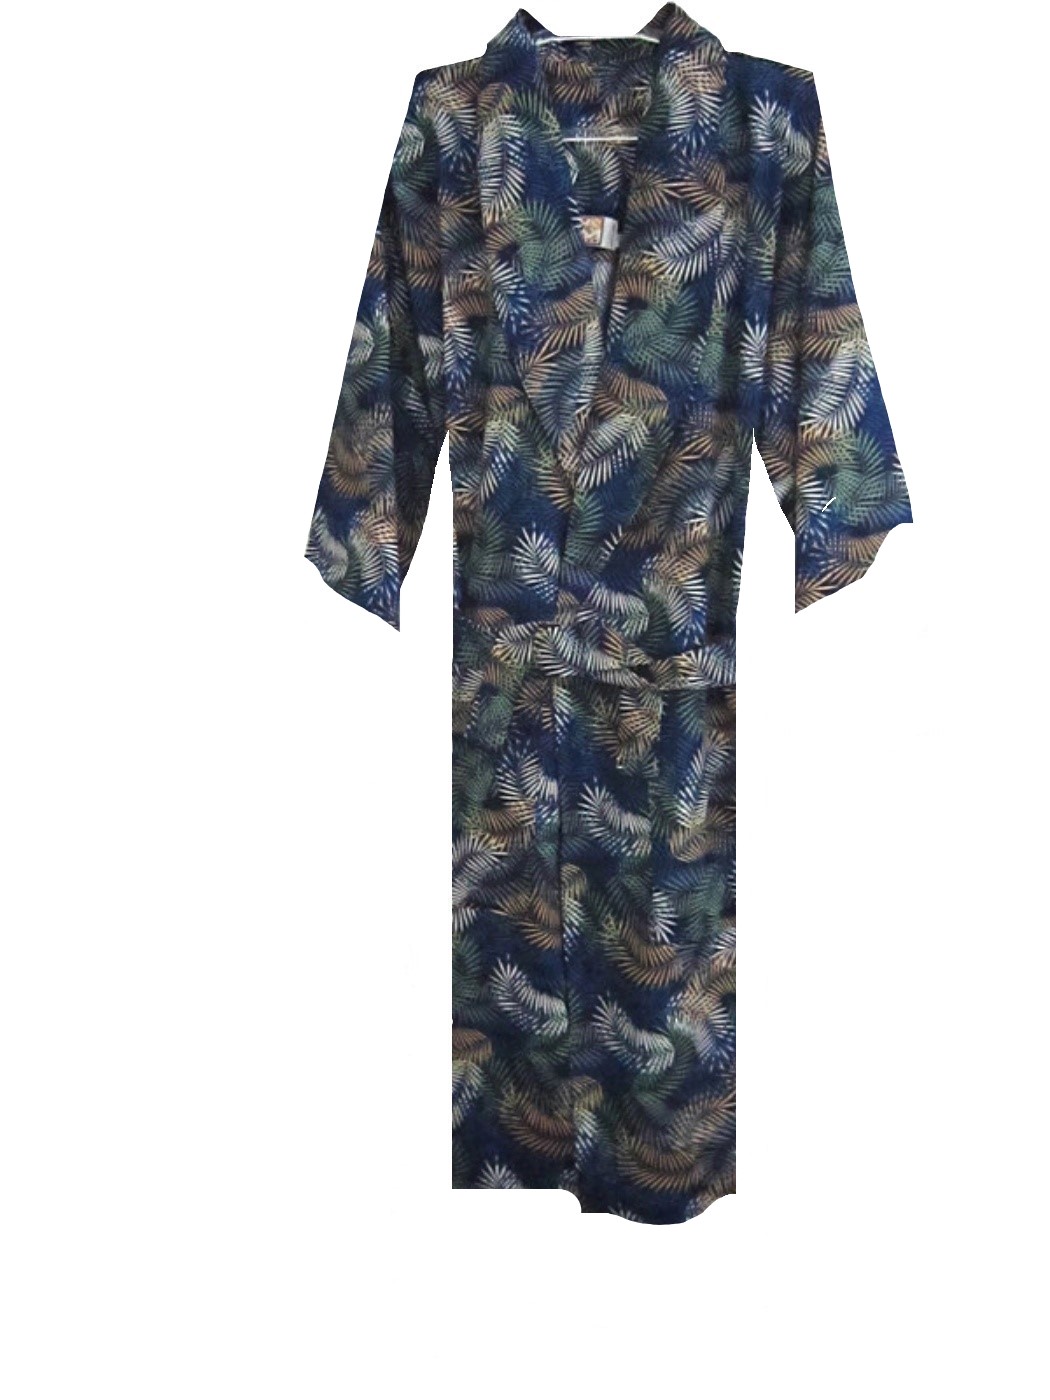 เสื้อคลุมนอน หญิง เสื้อคลุม ทับ ชุดนอน ผู้หญิง เสื้อคลุมชุดนอน ผญ 3XL ผู้ญิง 100%  ฝ้าย ขนาด 3X ใหญ่ ผ้าฝ้าย ใหม่ ทุกแพ็ค ผลิต ในไทย Robe Women ฺBig